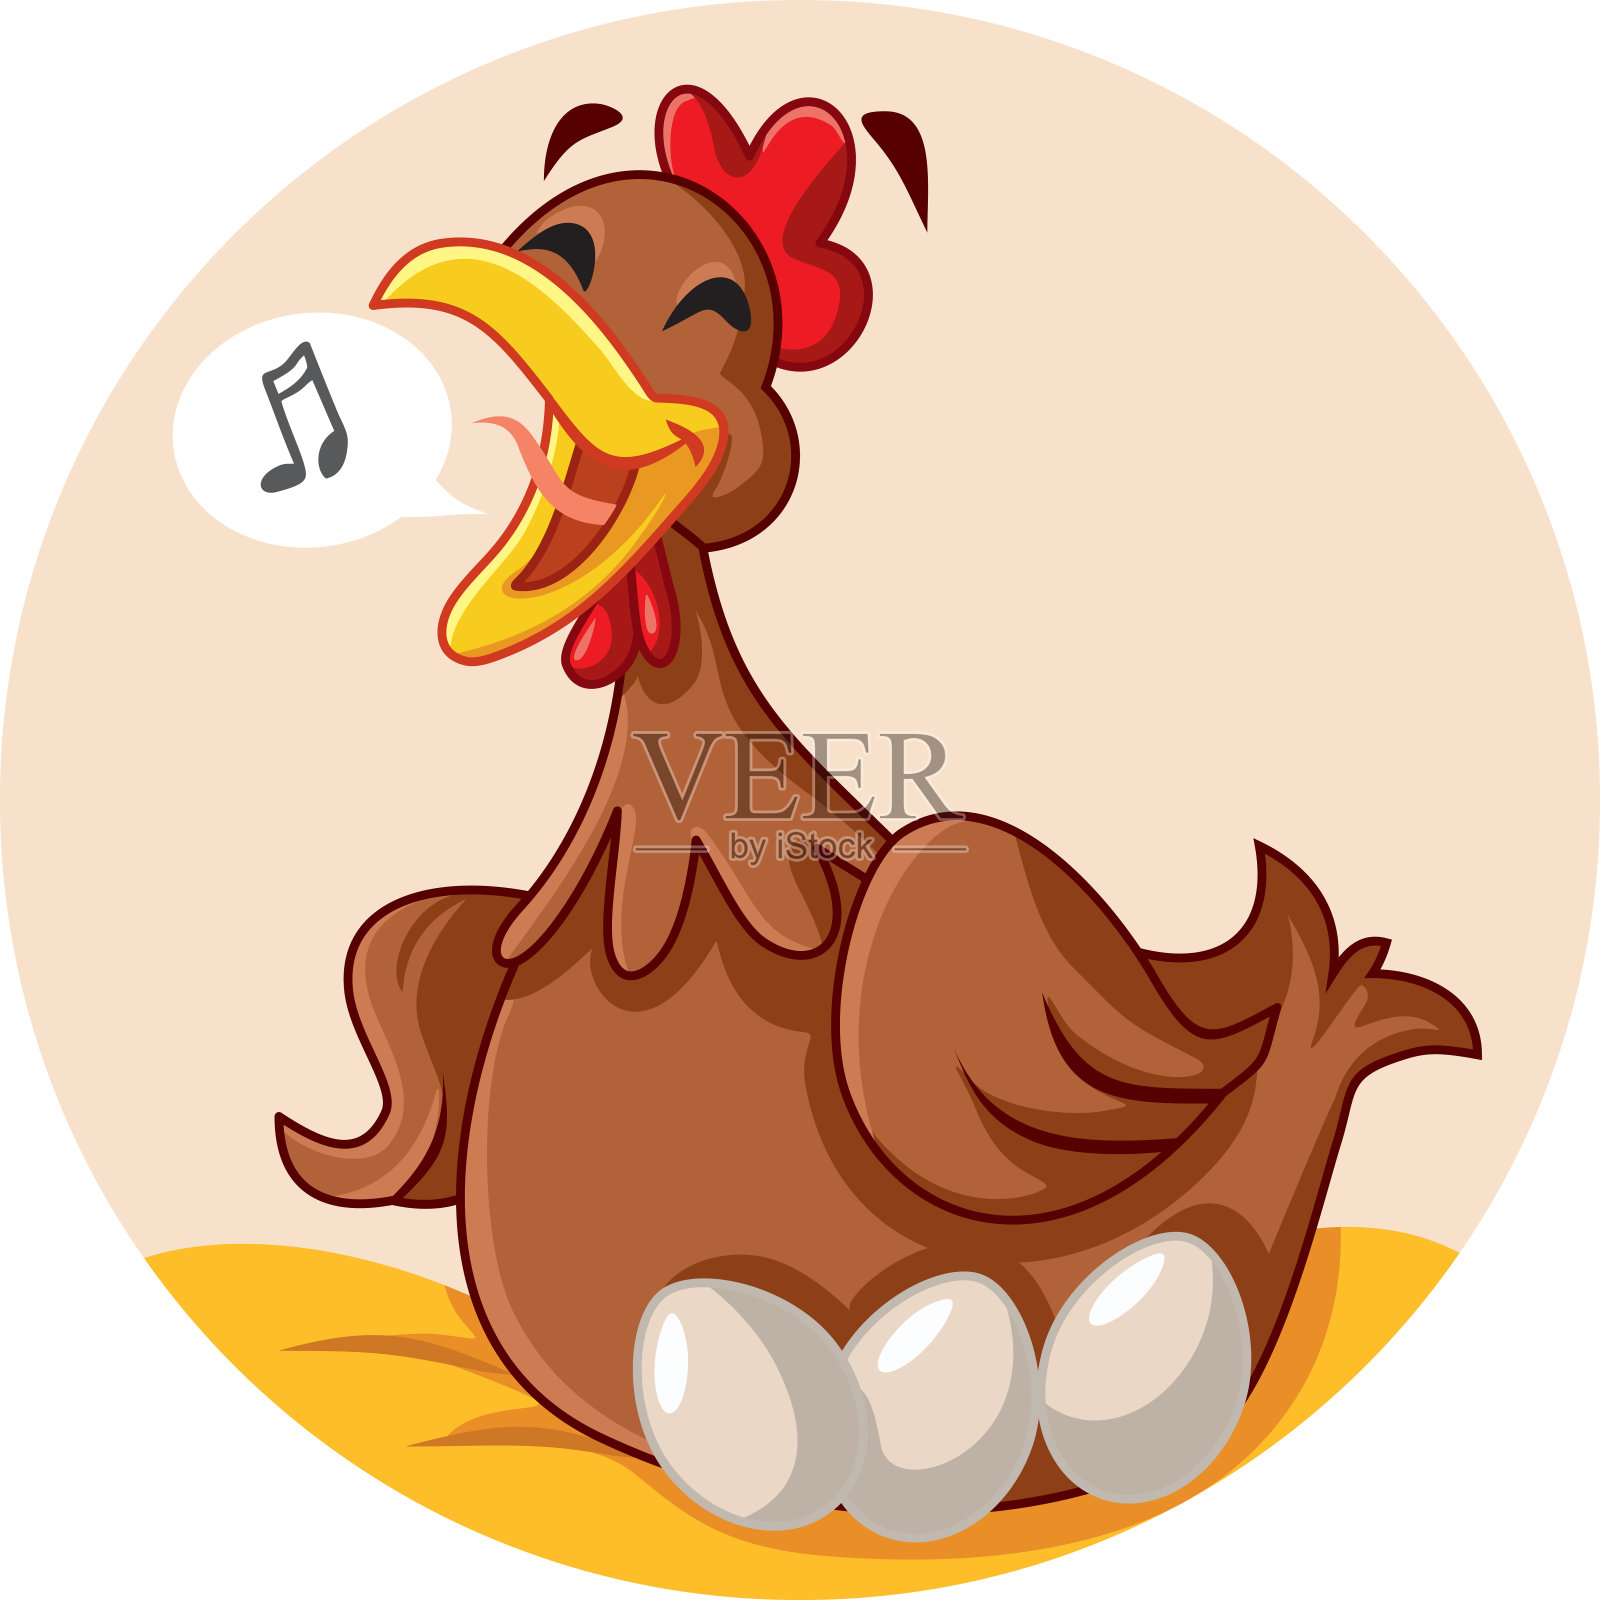 滑稽的母鸡坐在鸡蛋上唱歌的卡通吉祥物插画图片素材